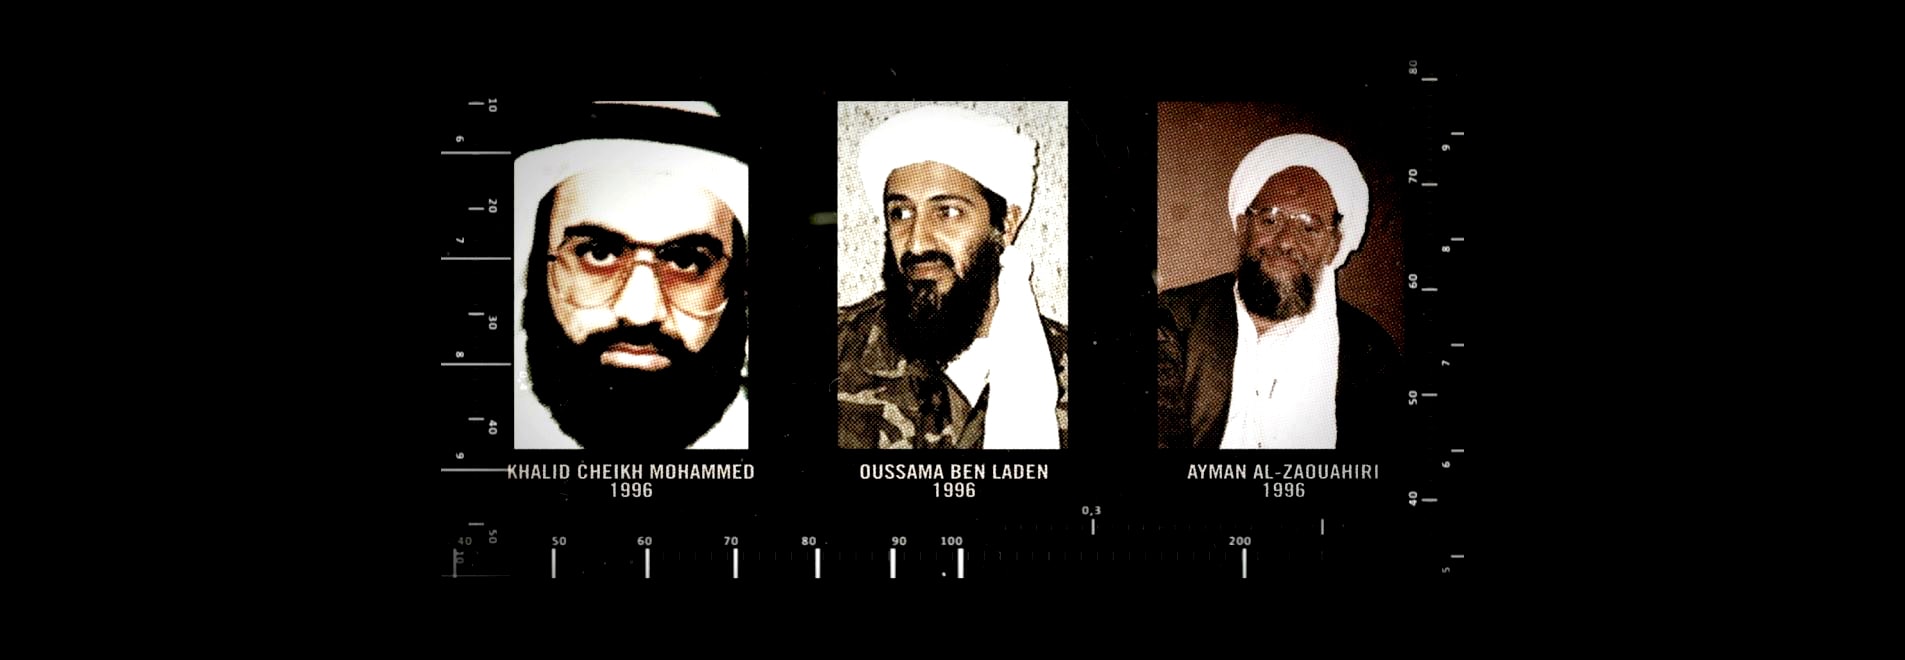 histoire de Ben Laden